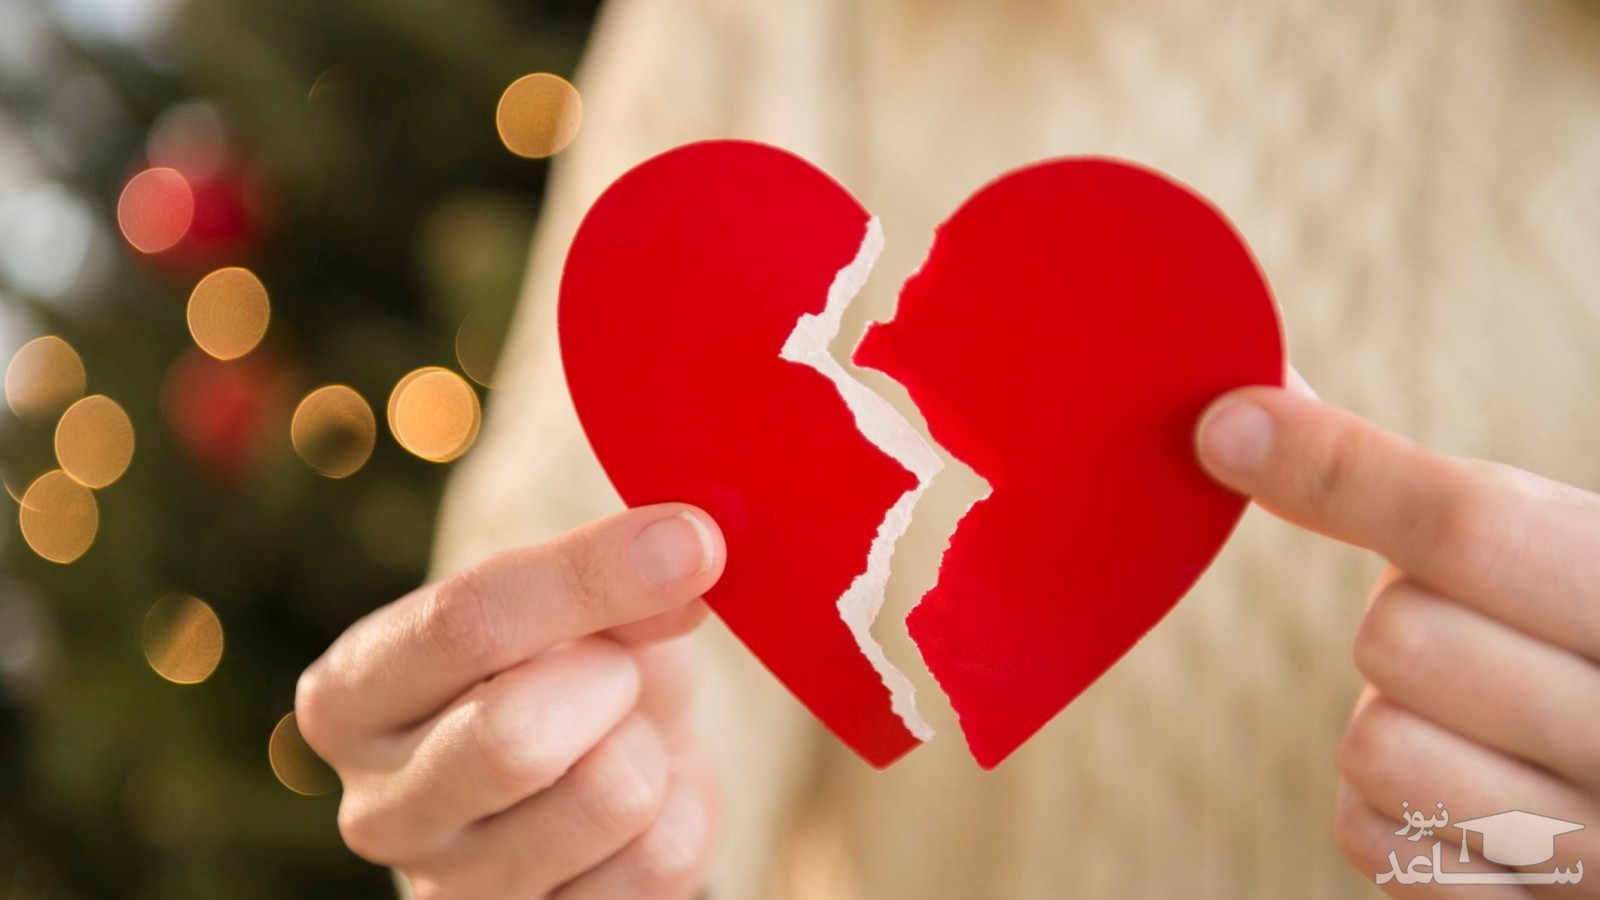 اشتباهات یک رابطه عاشقانه را چگونه جبران کنیم؟